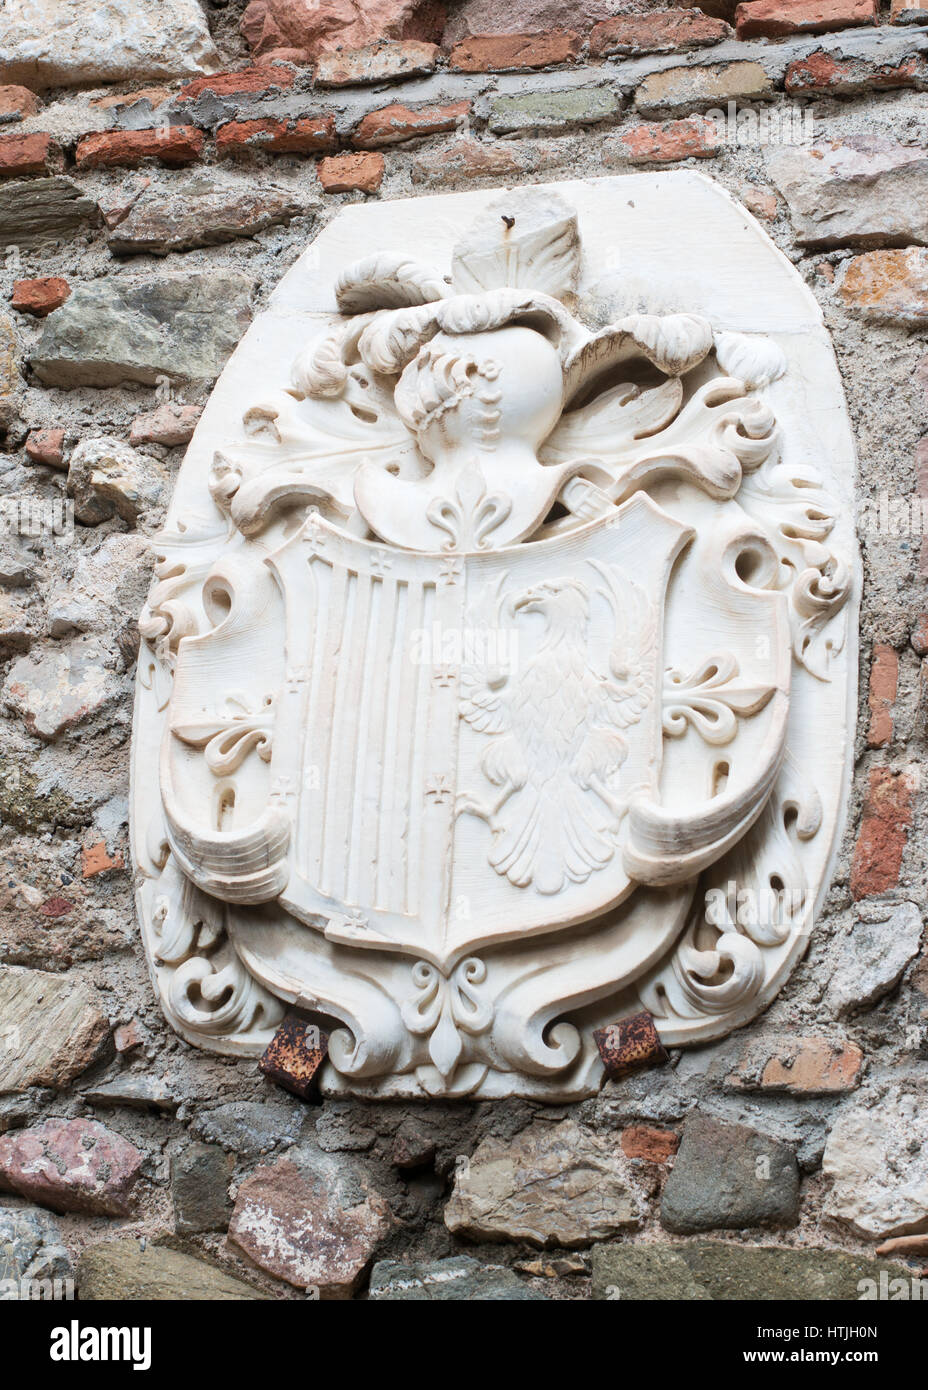 Coat of arms inside the Alcazaba or Moorish castle, Malaga, Andalusia, Spain, Europe Stock Photo